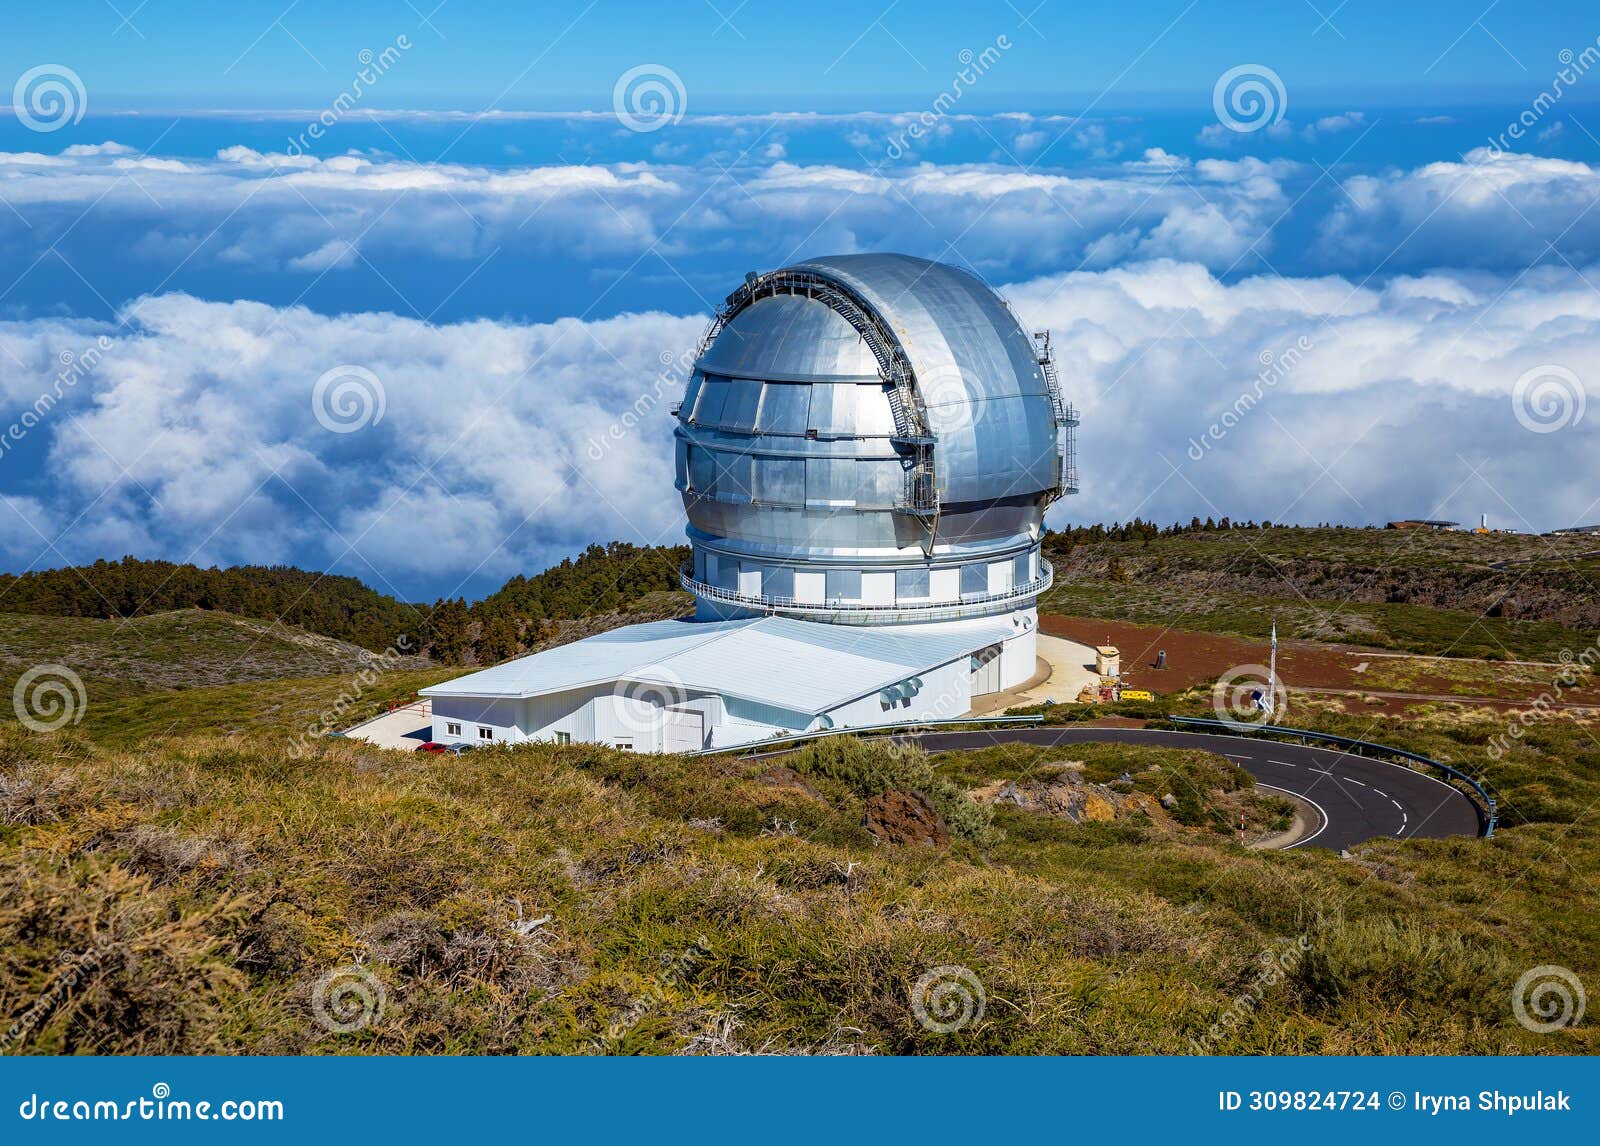 gran telescopio canarias, roque de los muchachos observatory, island la palma, canary islands, spain, europe